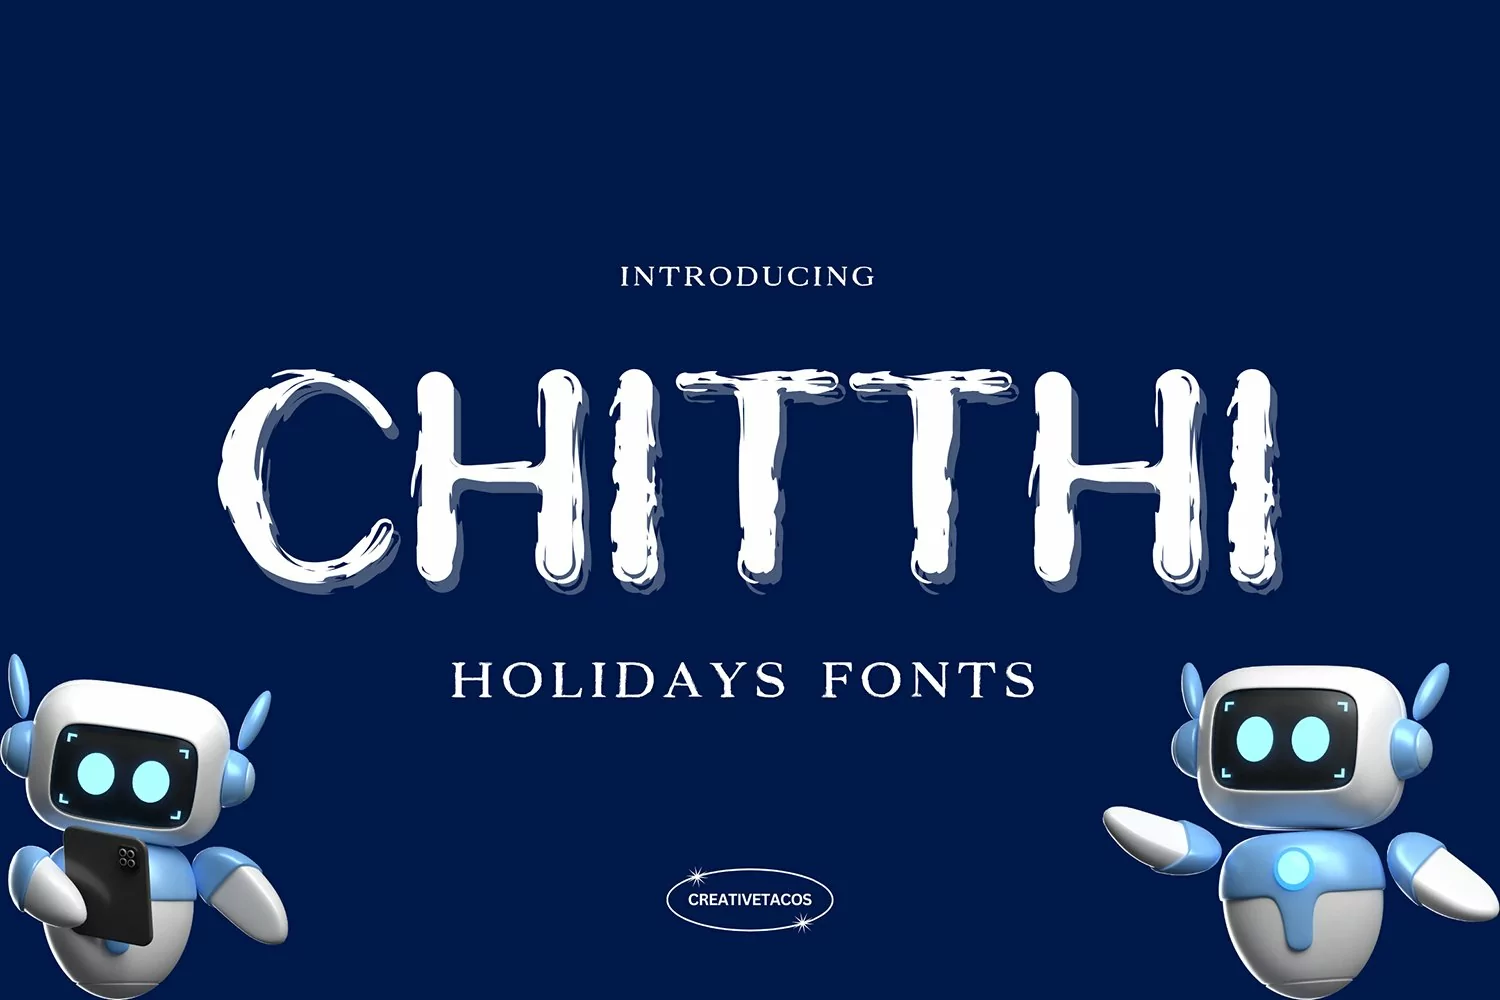 Chitthi Holidays Font